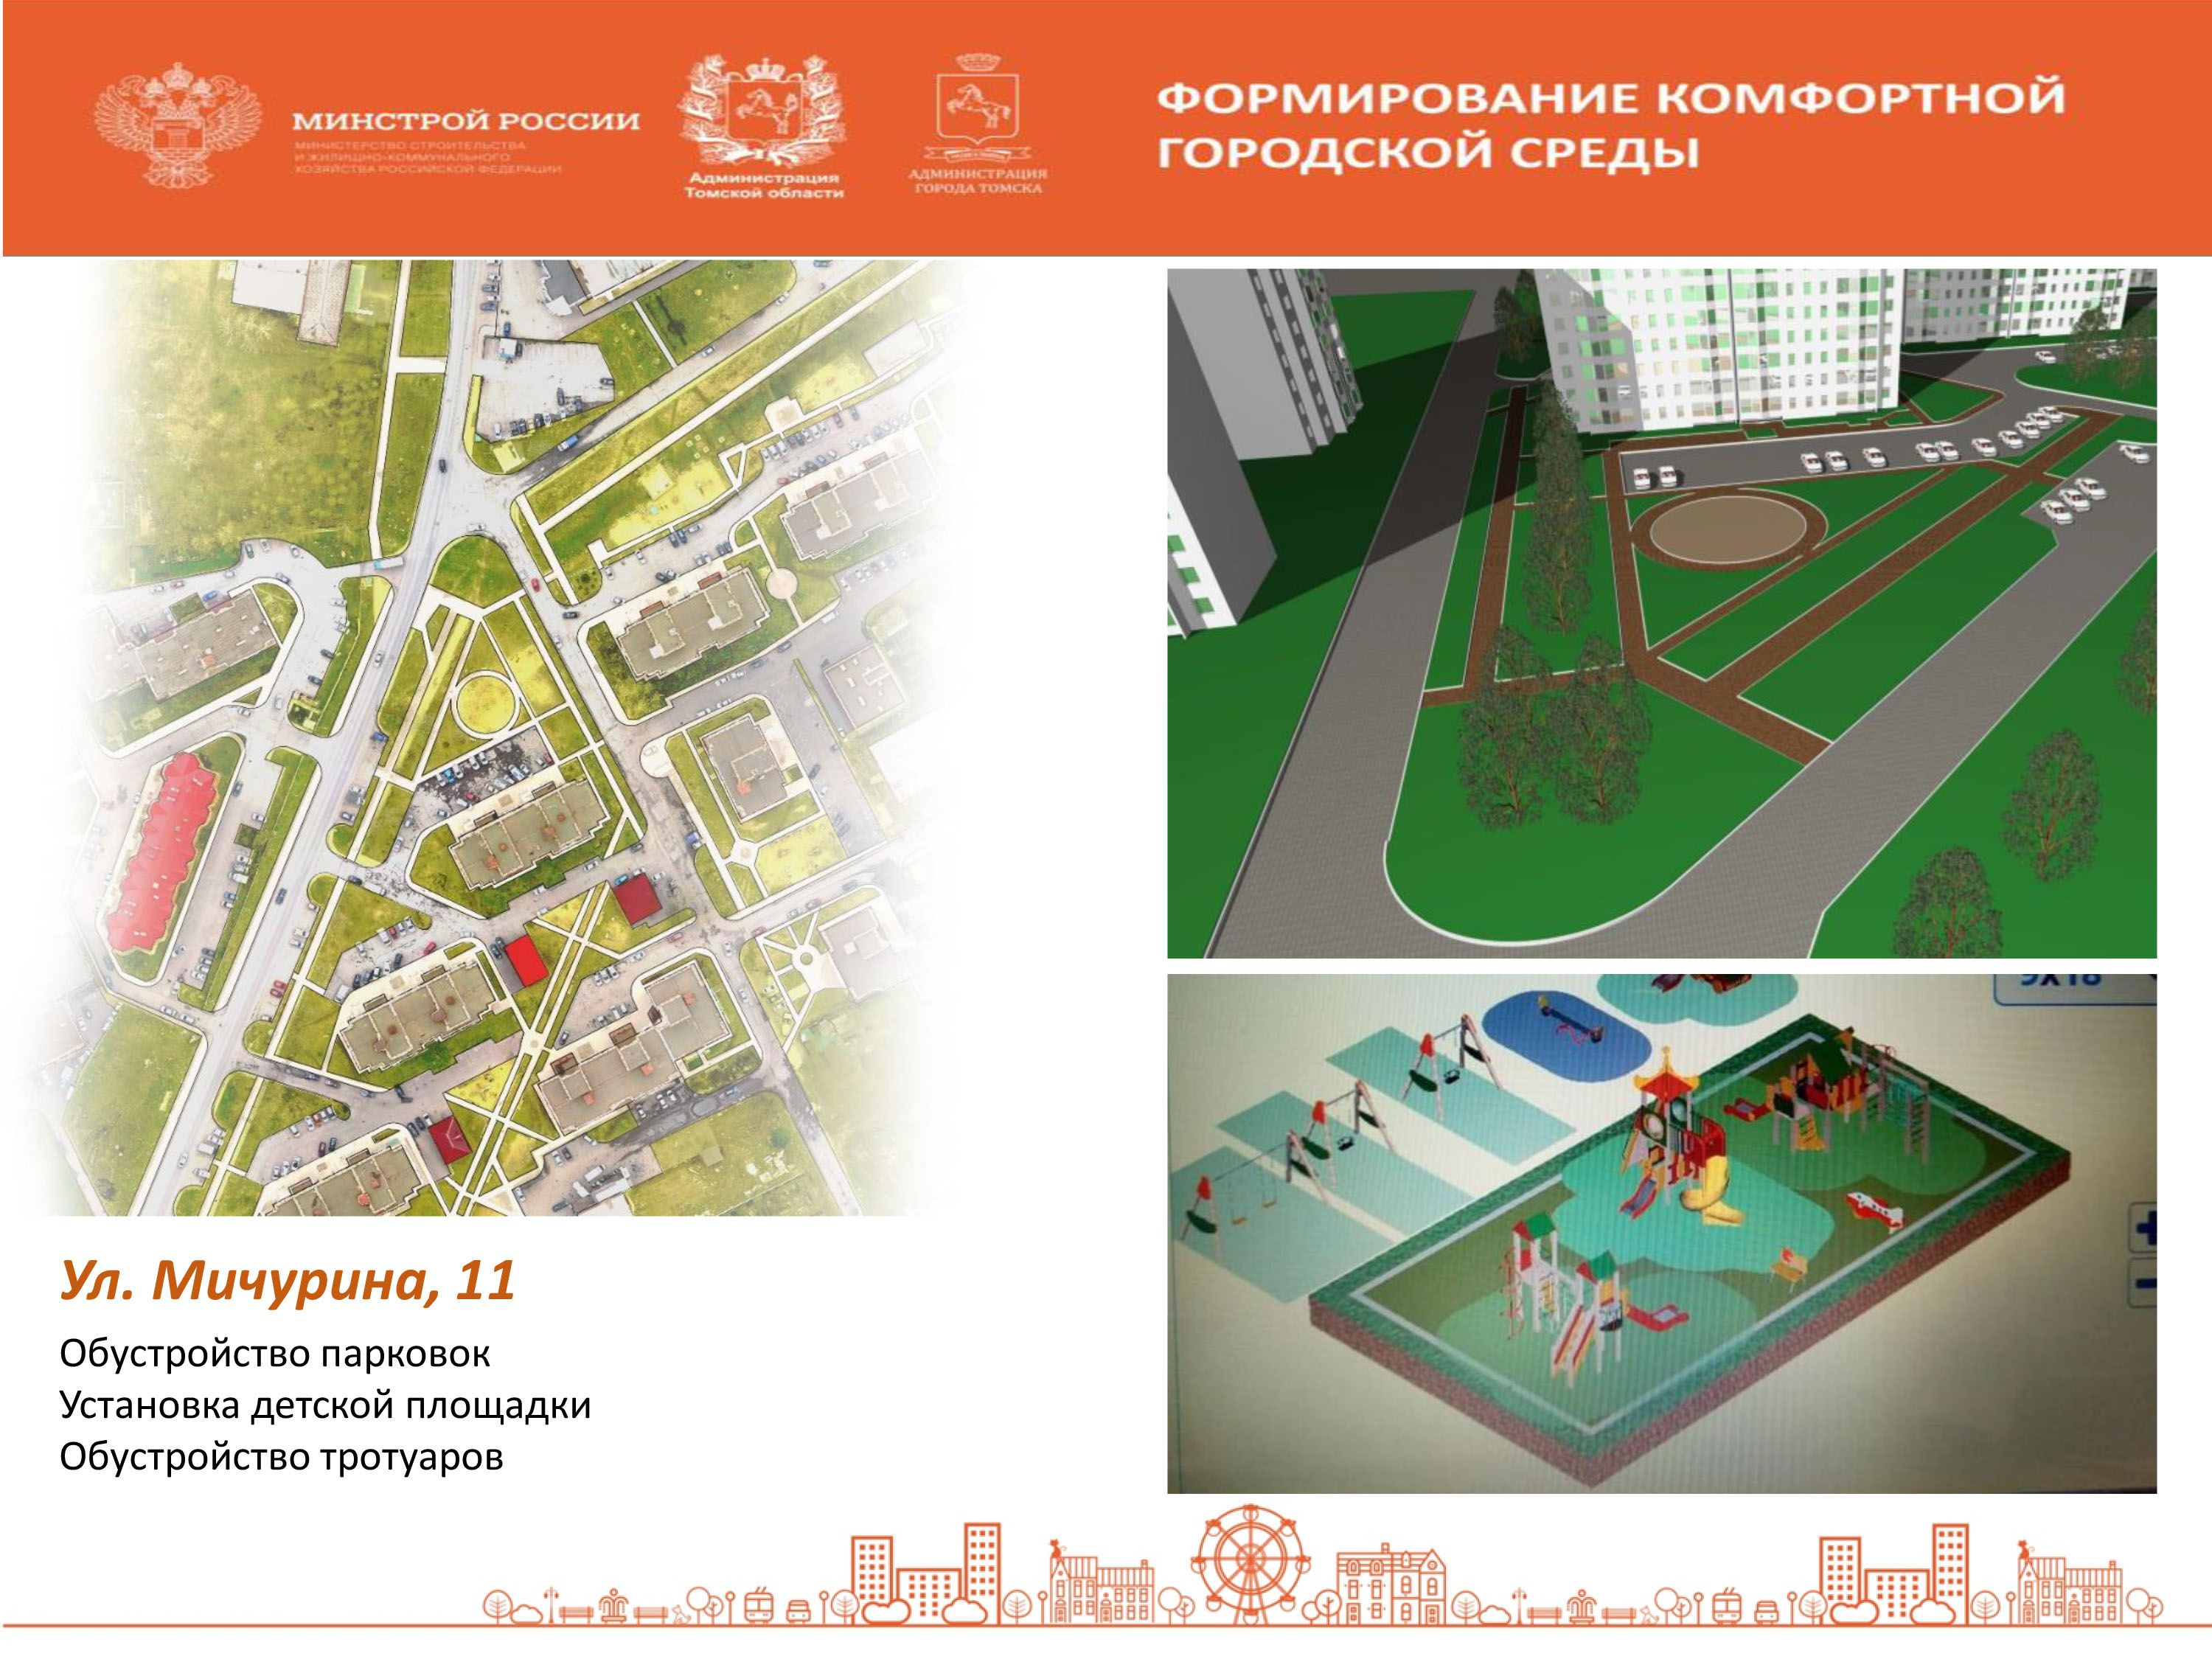 Общественные пространства в городе Томске. Выбирайте общественные пространства для благоустройства. Бюллетень голосование комфортная городская среда. Программа развития общественных пространств РТ.